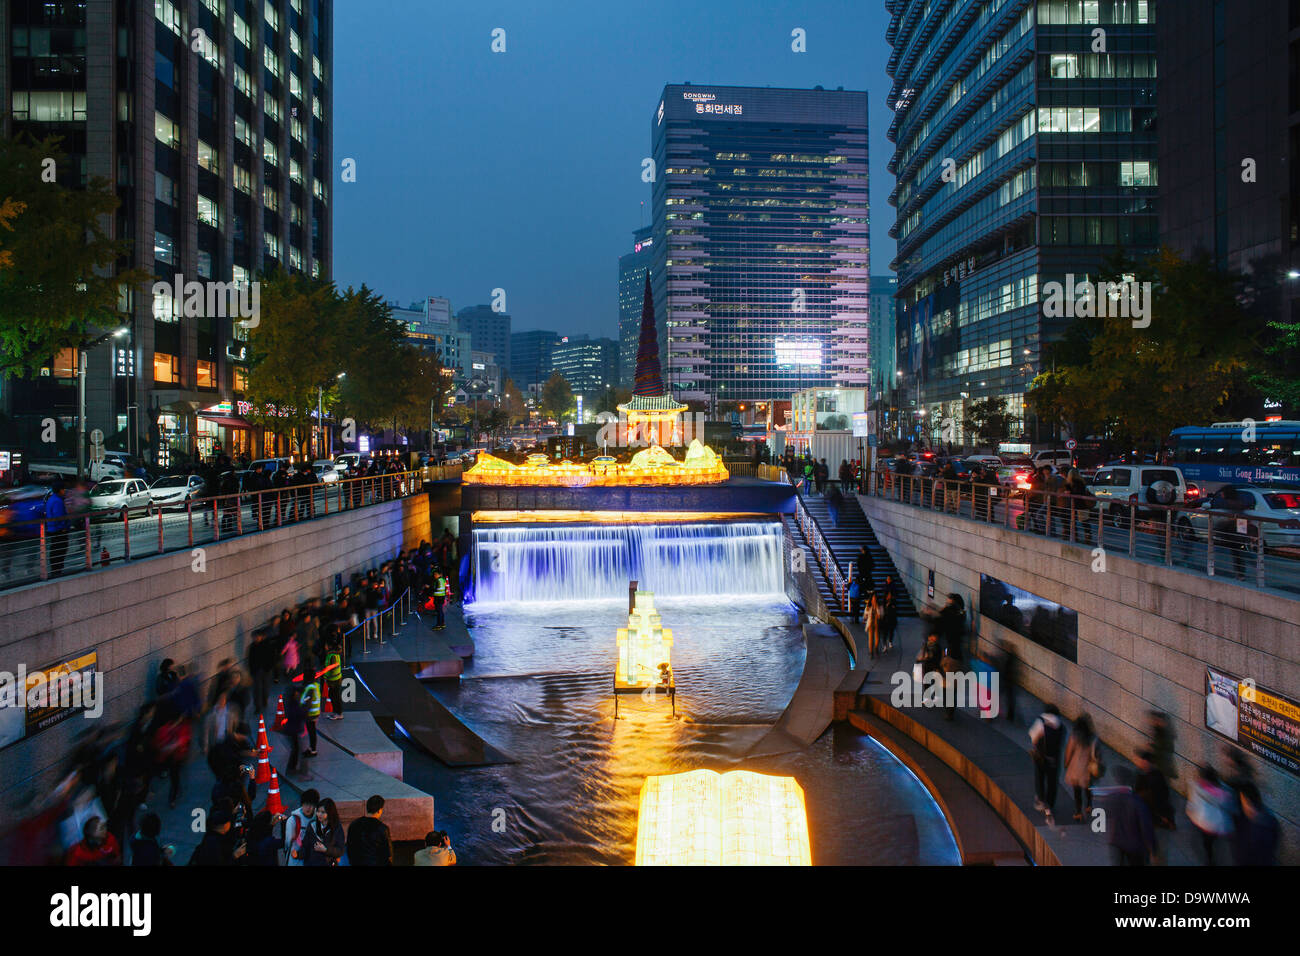 Fête des lanternes qui a lieu chaque année le long de la Cheonggyecheon Stream, Séoul, Corée du Sud, Asie Banque D'Images